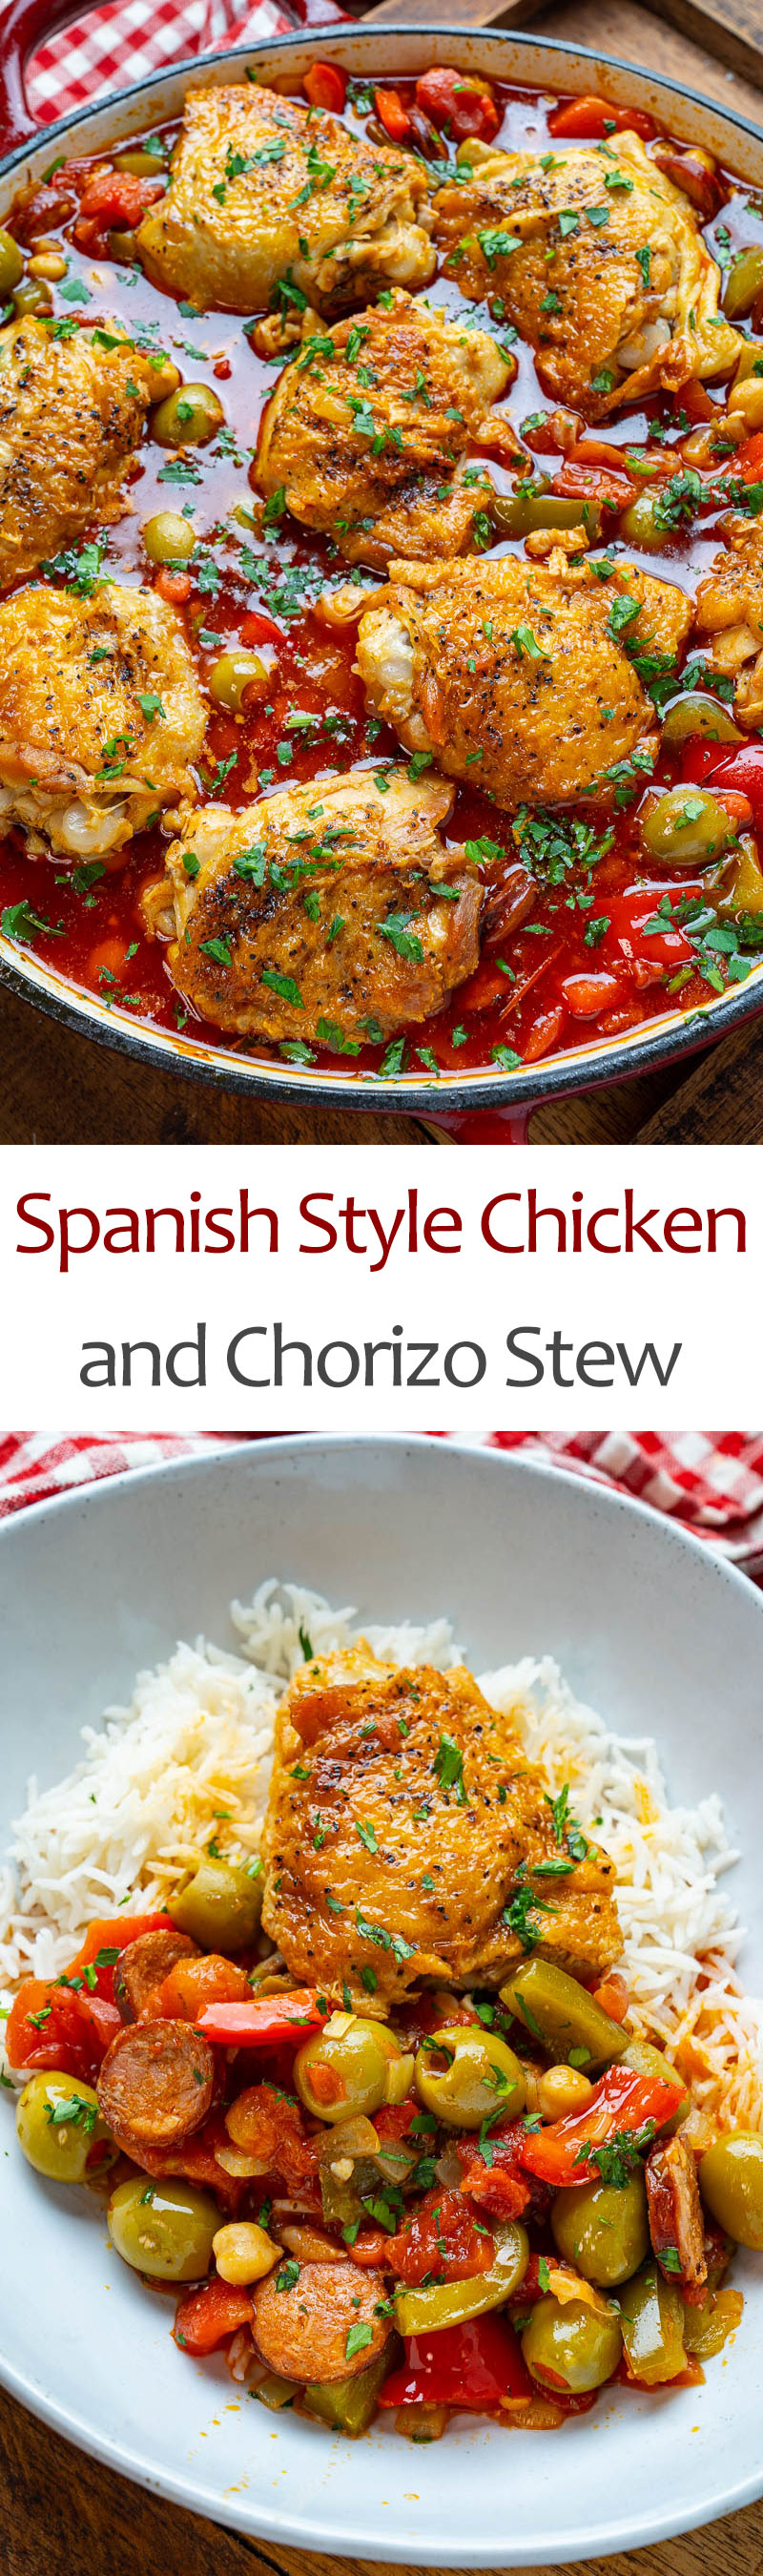 Spanish Style Chicken and Chorizo Stew